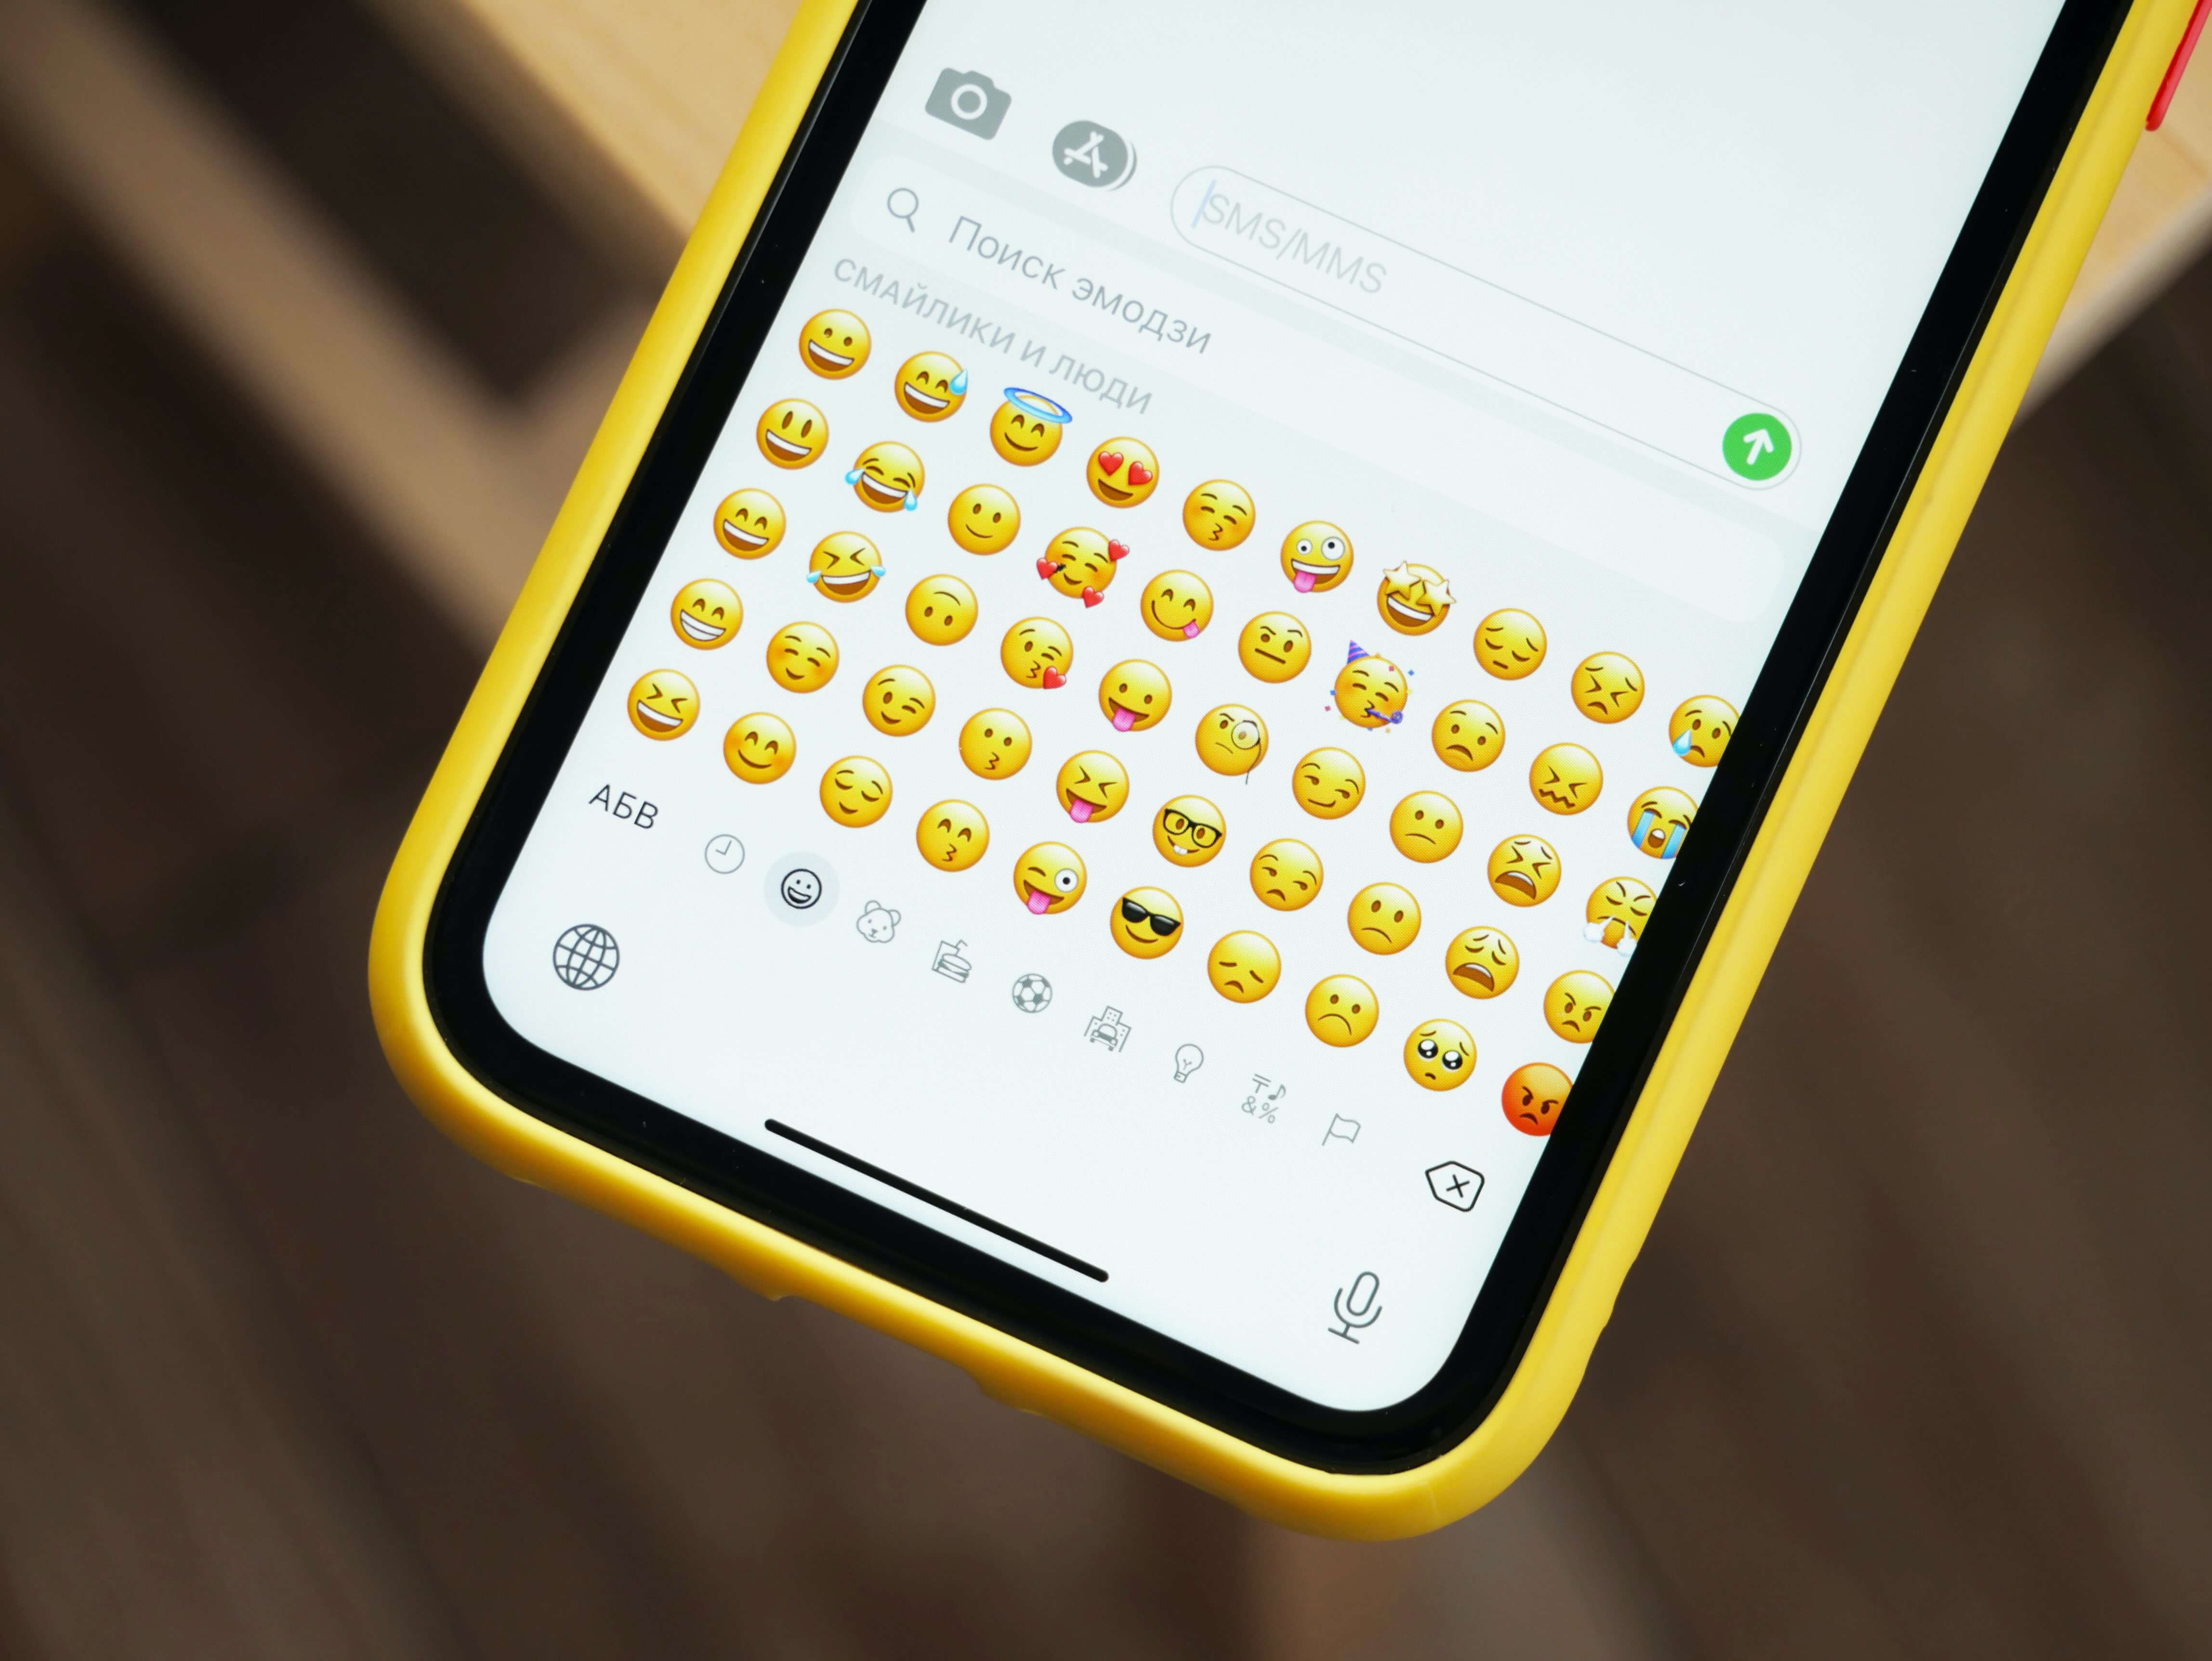 An emoji keyboard on a smartphone